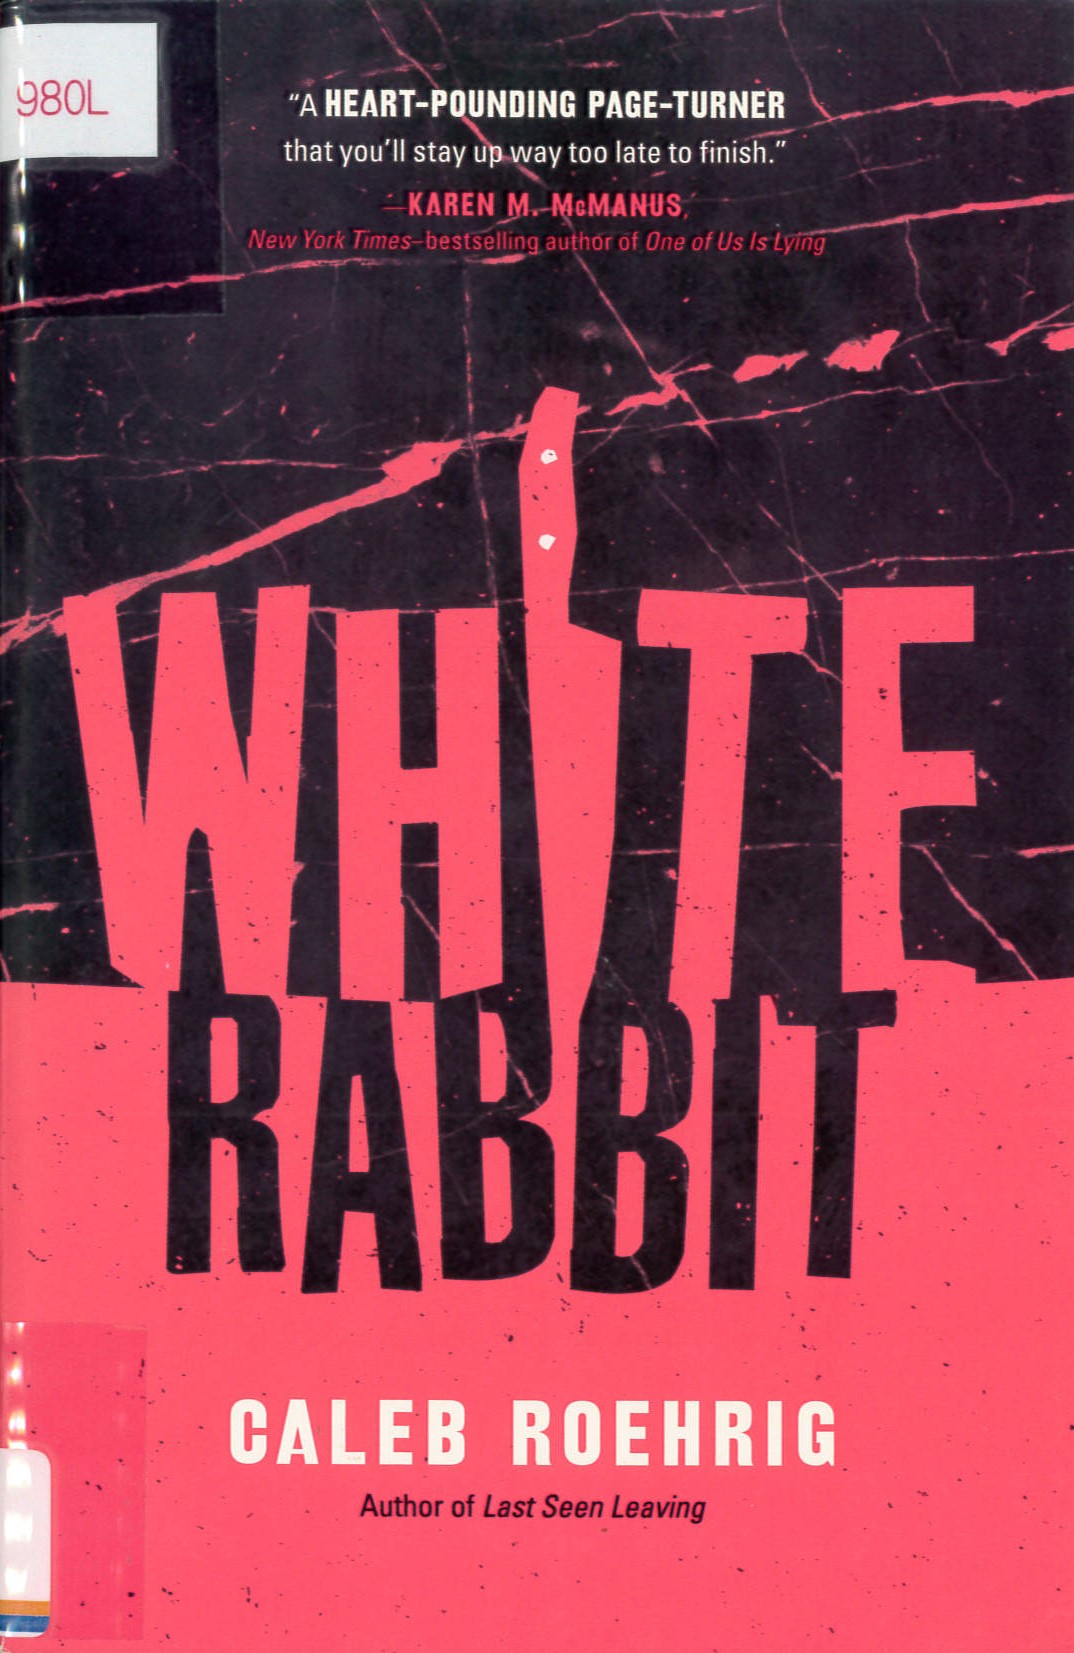 White rabbit /